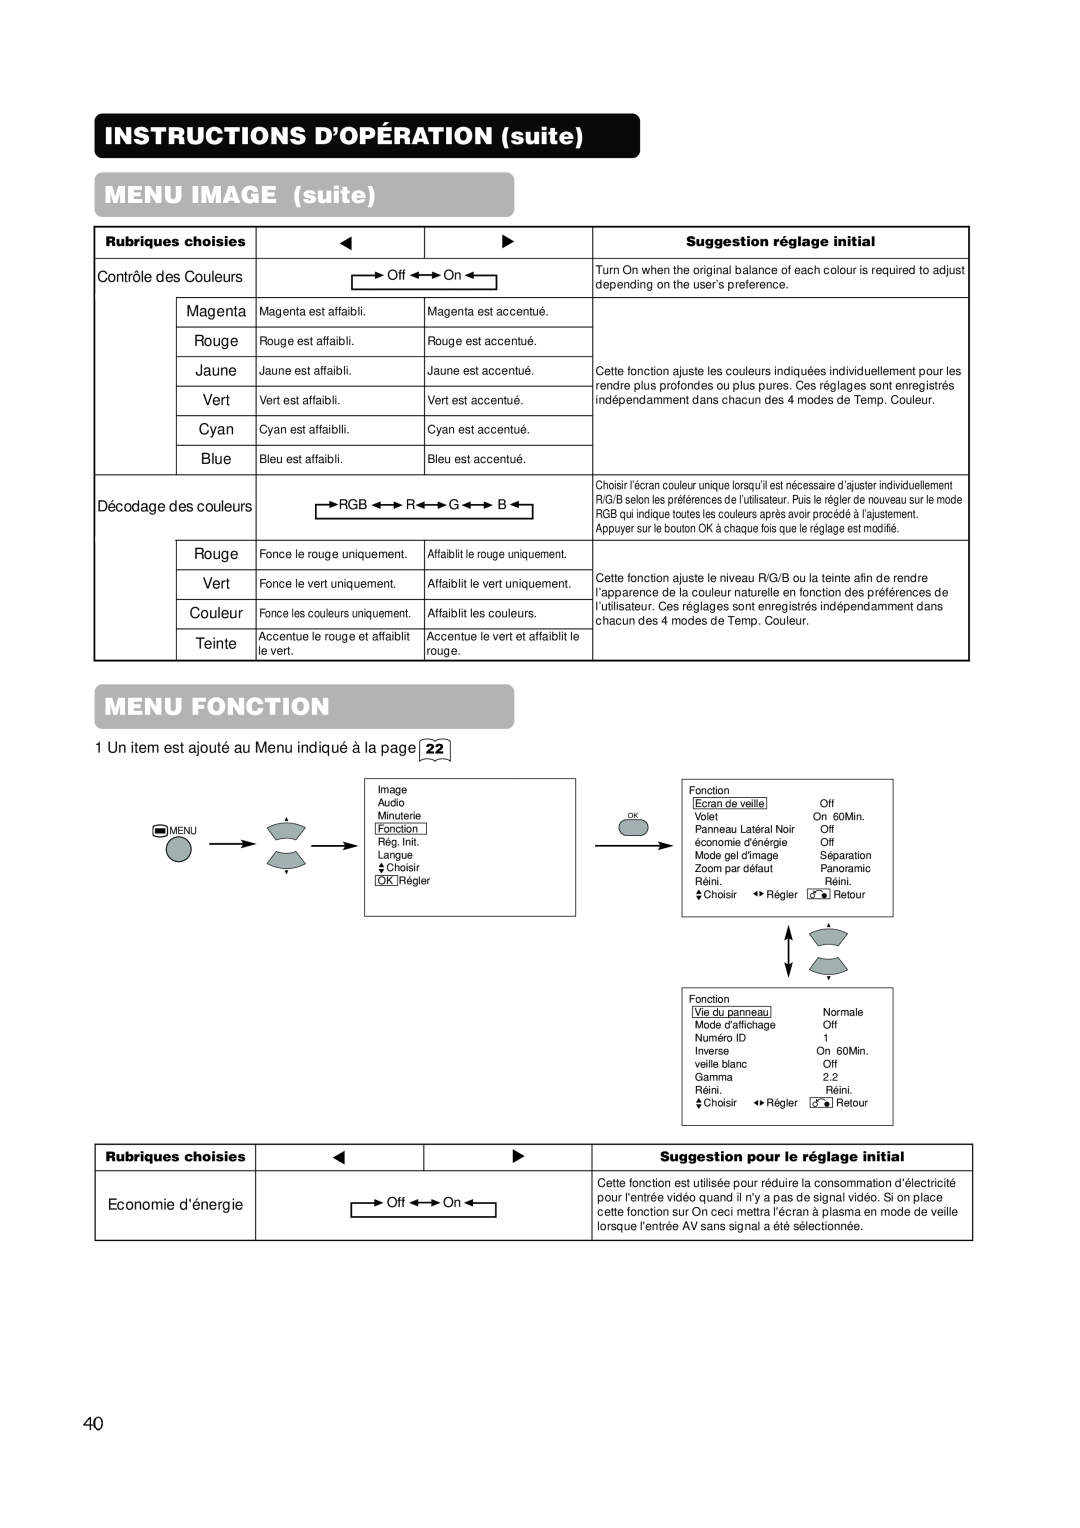 Hitachi PW1A user manual Menu Fonction, INSTRUCTIONS D’OPÉRATION suite MENU IMAGE suite 